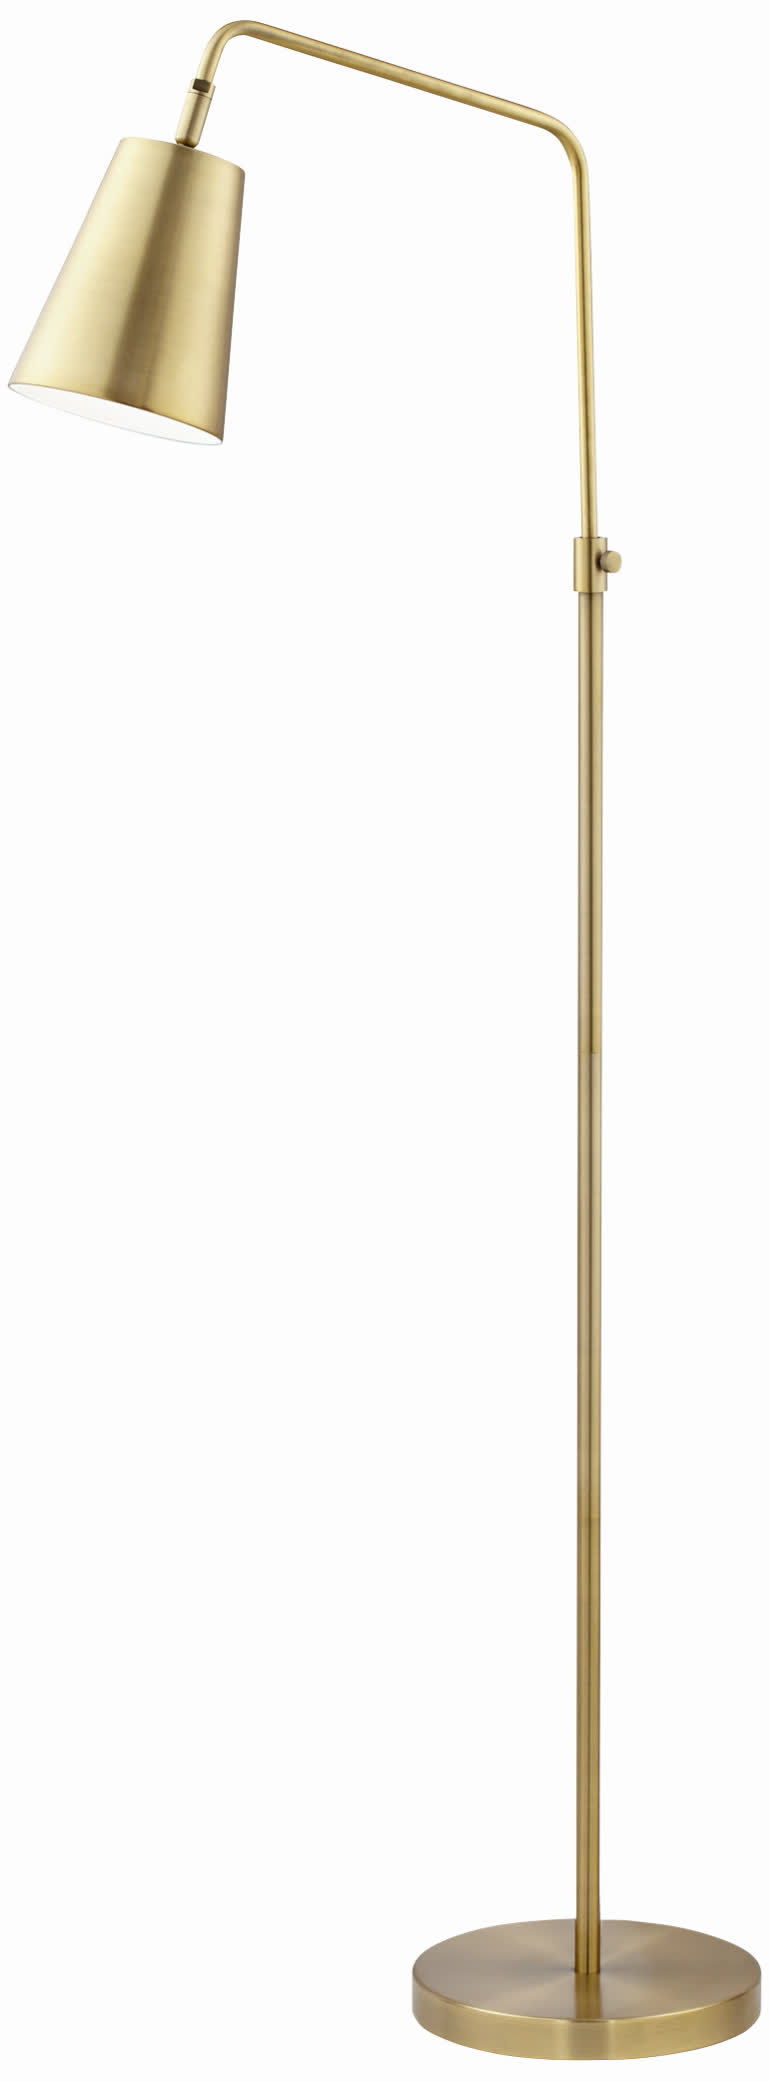 Zella - Floor Lamp - Brushed Antique Brass